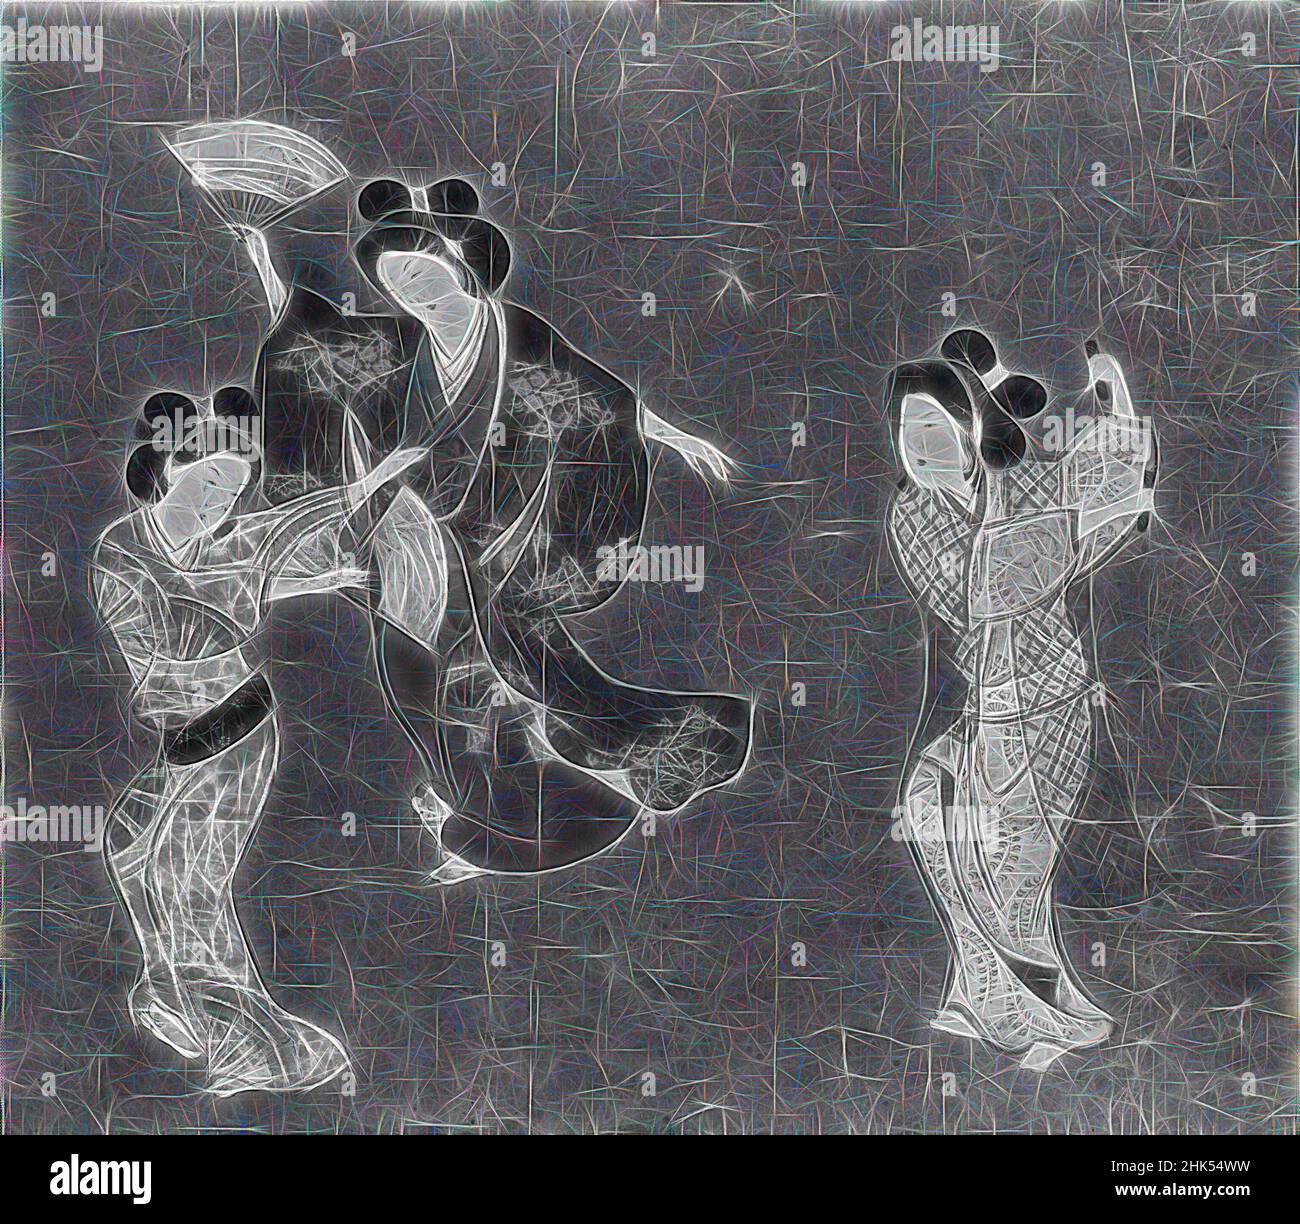 Inspiriert von drei Tänzern, hängende Schriftrolle, Tintenfarbe und Gofun auf Papier, Japan, Kambun-Ära, 1661-1672, Edo-Periode, Kambun Era, ohne Halterung: 11 1/4 x 12 1/2 Zoll, 28,6 x 31,8 cm, neu erfunden von Artotop. Klassische Kunst neu erfunden mit einem modernen Twist. Design von warmen fröhlichen Leuchten der Helligkeit und Lichtstrahl Strahlkraft. Fotografie inspiriert von Surrealismus und Futurismus, umarmt dynamische Energie der modernen Technologie, Bewegung, Geschwindigkeit und Kultur zu revolutionieren Stockfoto